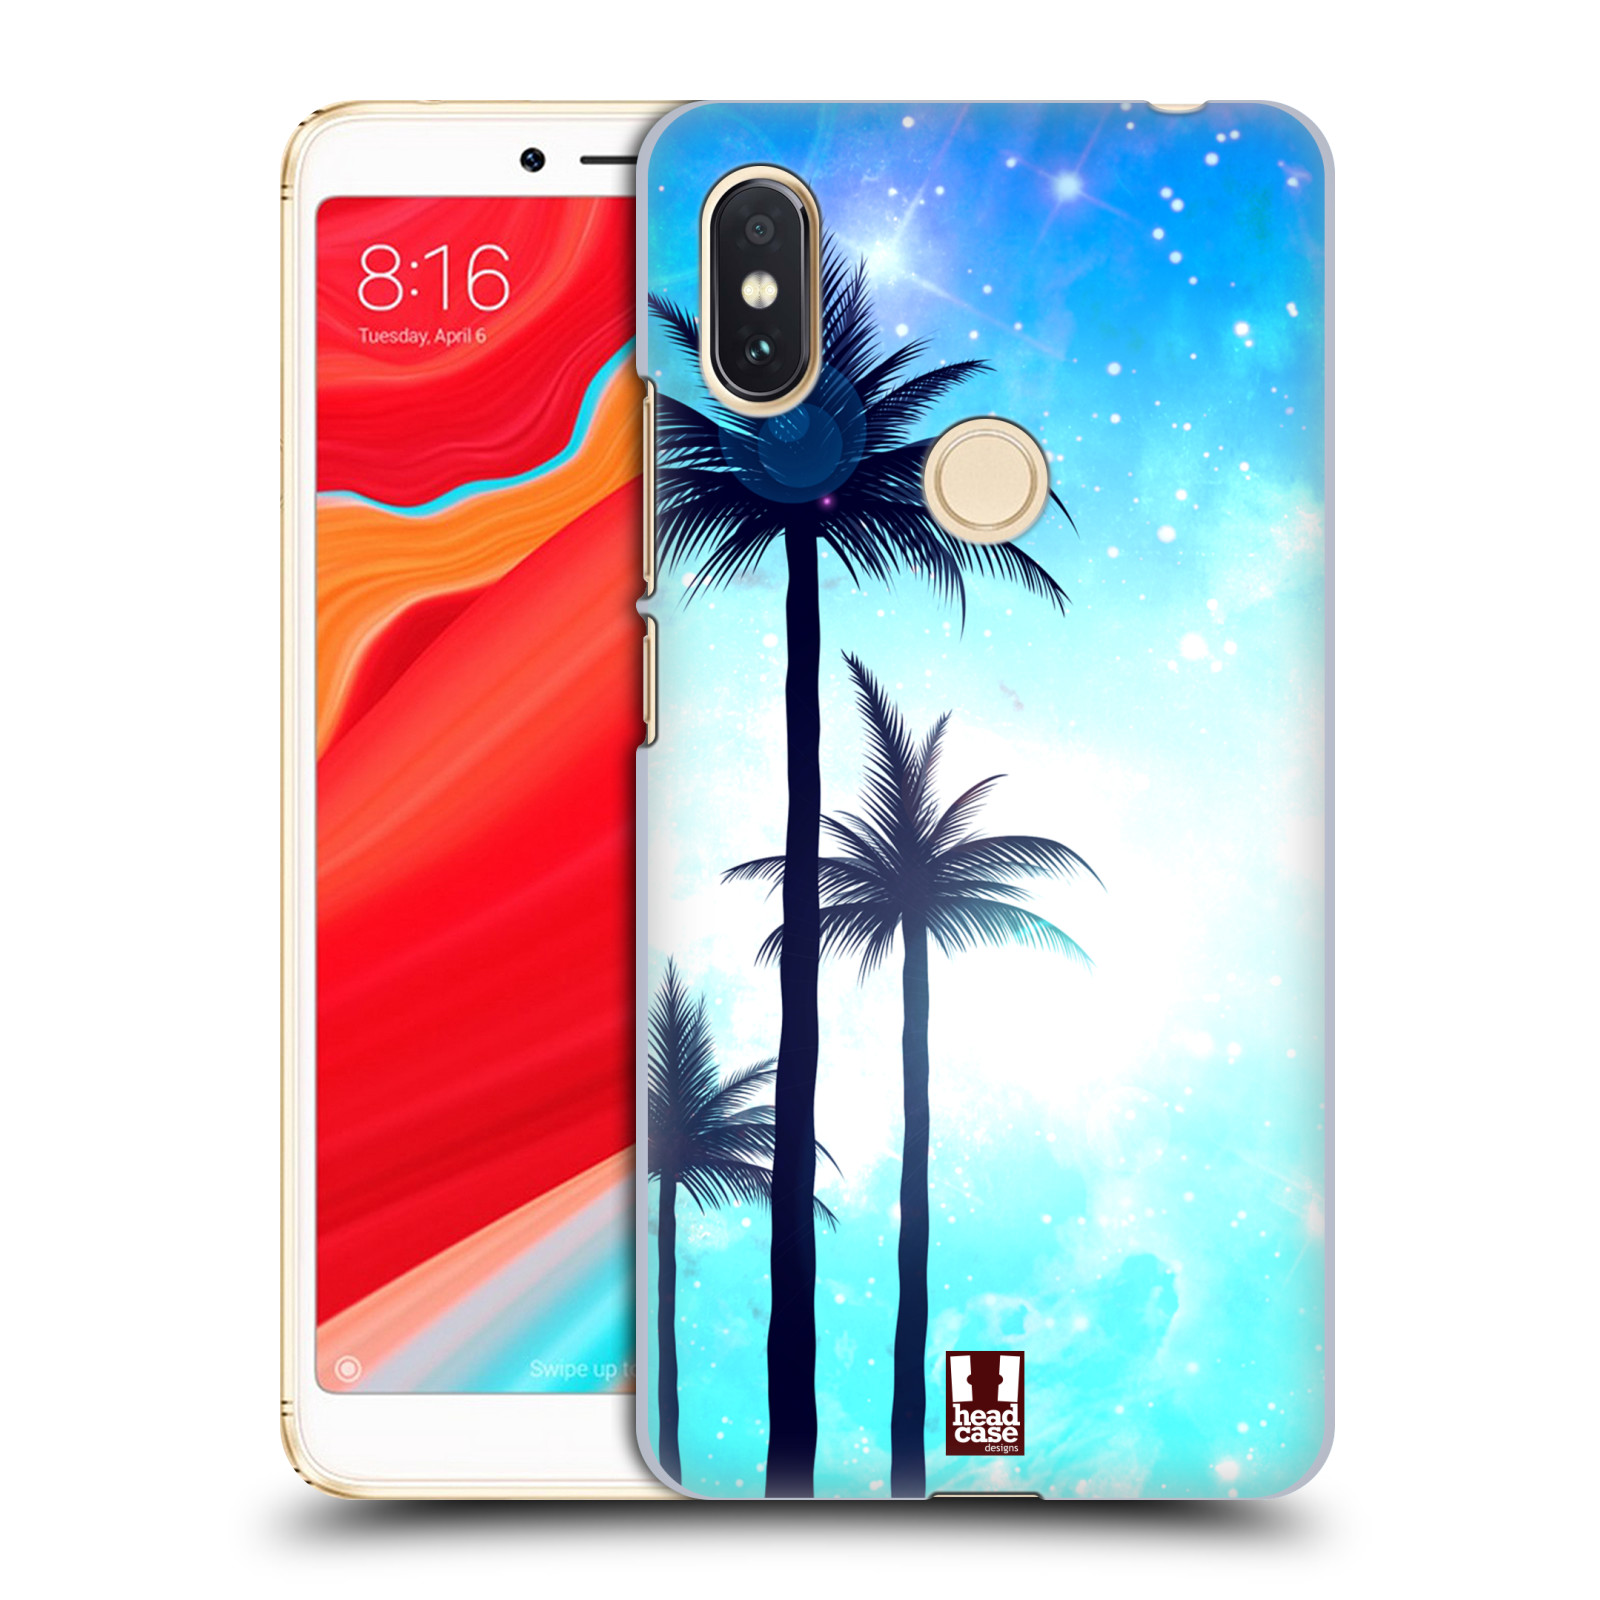 HEAD CASE plastový obal na mobil Xiaomi Redmi S2 vzor Kreslený motiv silueta moře a palmy MODRÁ